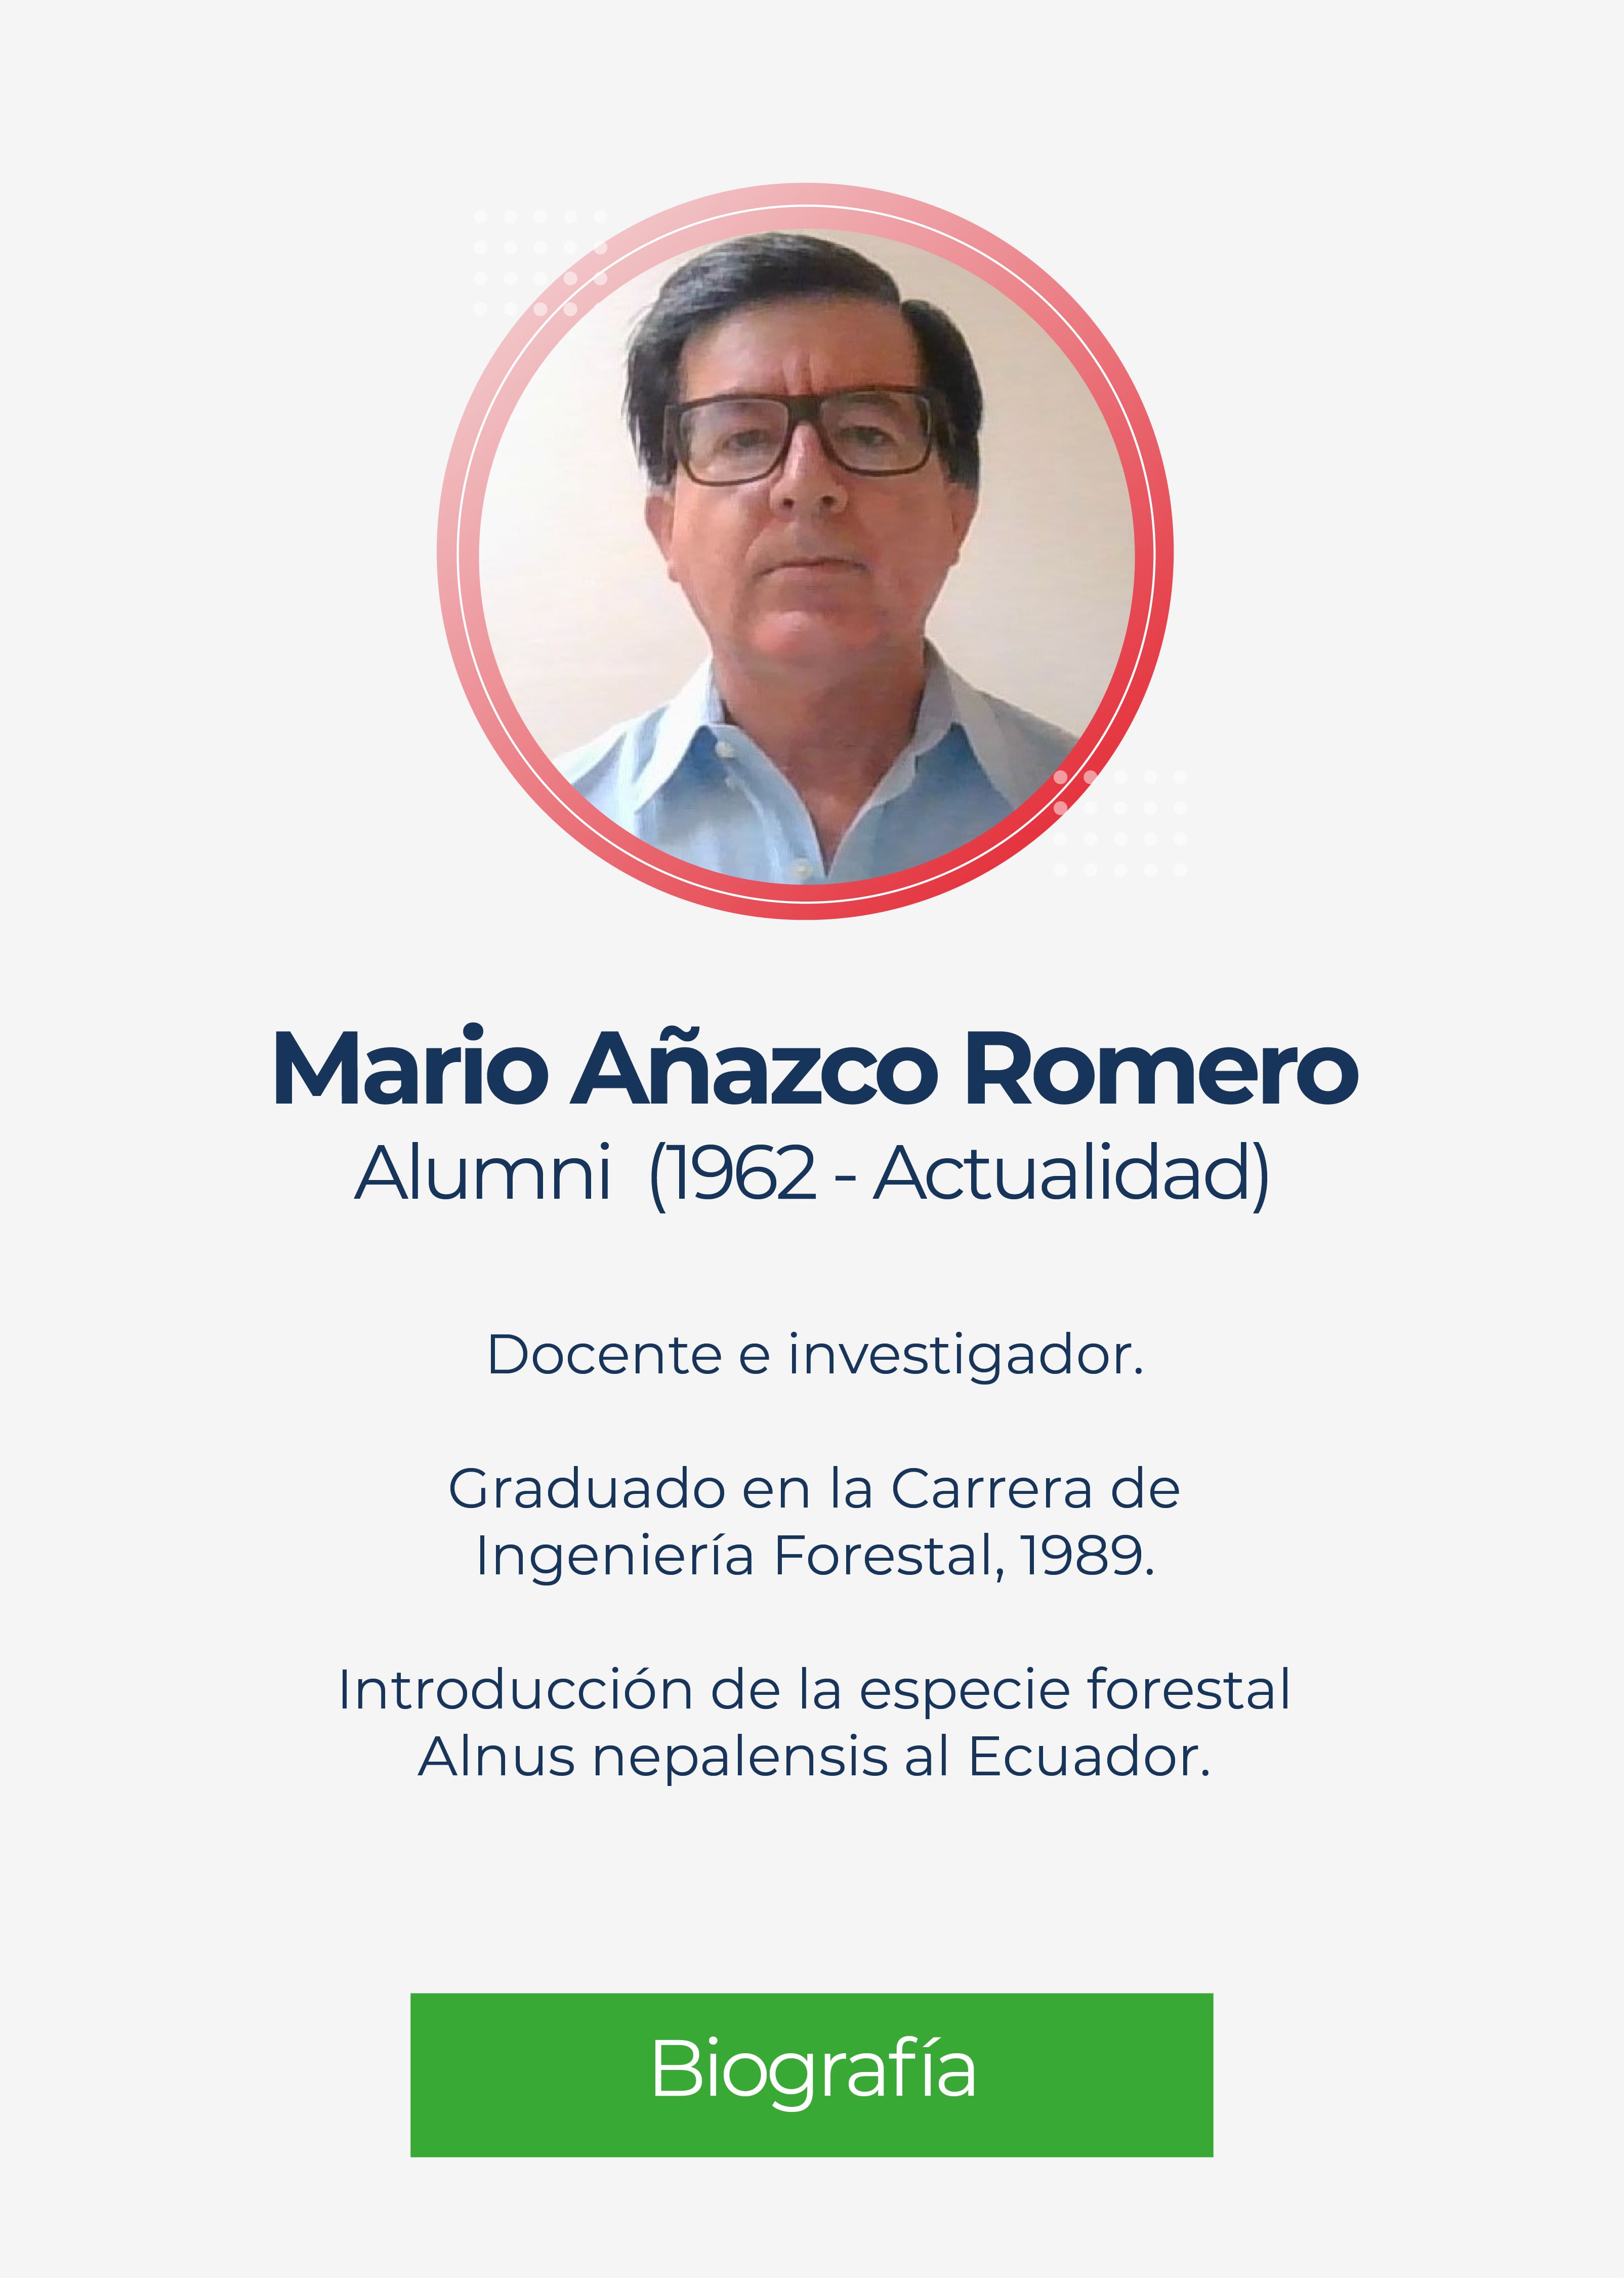 Mario José Añazco Romero